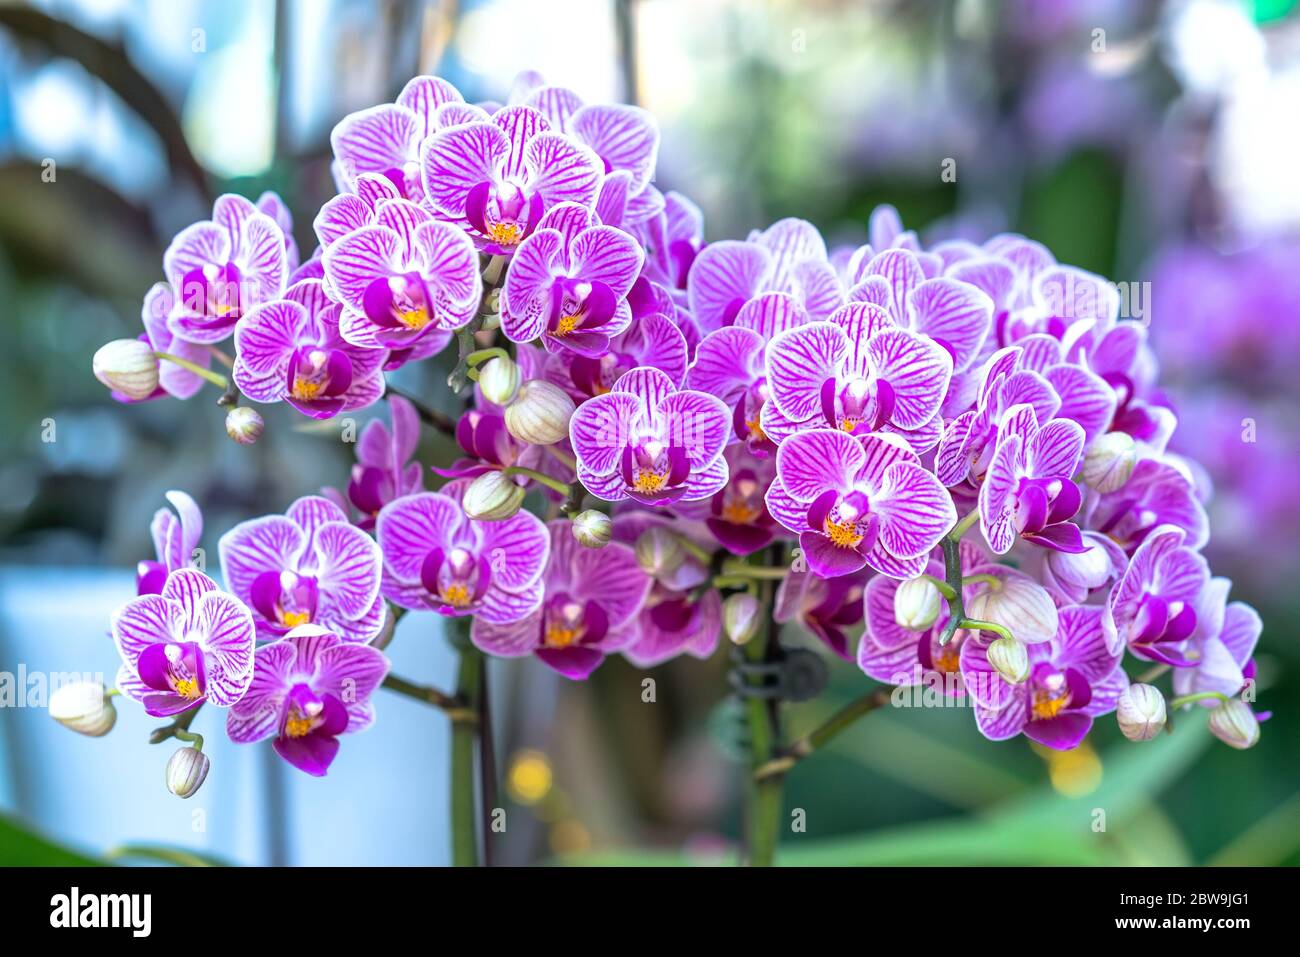 Una Foto De Cerca De Orquídeas [phalaenopsis] En Naturales Fotos, retratos,  imágenes y fotografía de archivo libres de derecho. Image 41686625